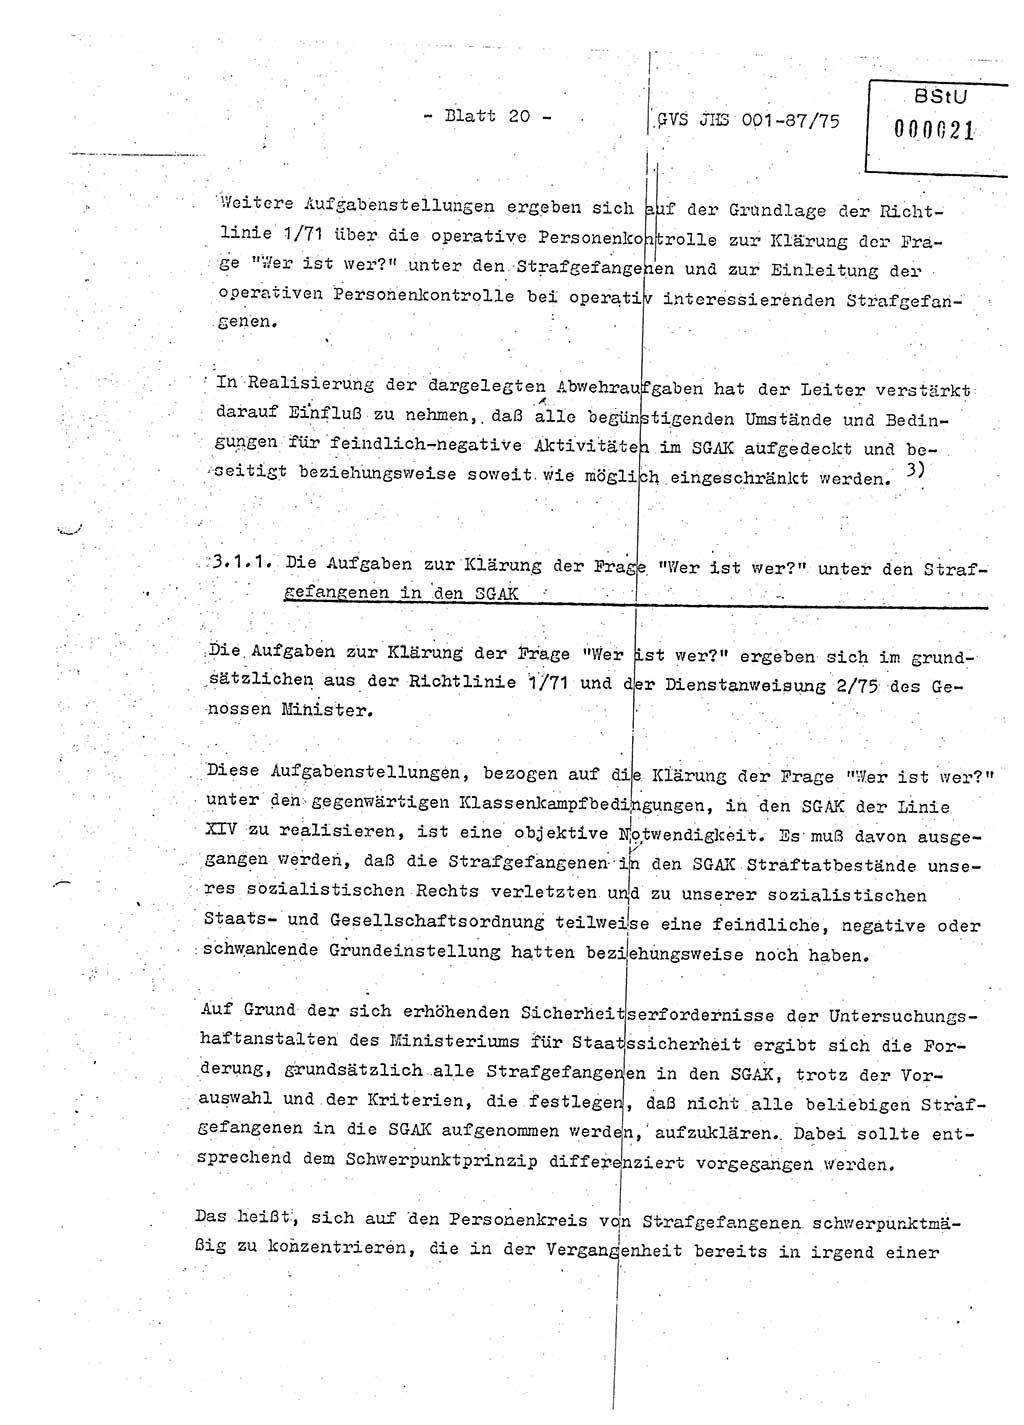 Diplomarbeit Hauptmann Volkmar Heinz (Abt. ⅩⅣ), Oberleutnant Lothar Rüdiger (BV Lpz. Abt. Ⅺ), Ministerium für Staatssicherheit (MfS) [Deutsche Demokratische Republik (DDR)], Juristische Hochschule (JHS), Geheime Verschlußsache (GVS) o001-87/75, Potsdam 1975, Seite 20 (Dipl.-Arb. MfS DDR JHS GVS o001-87/75 1975, S. 20)